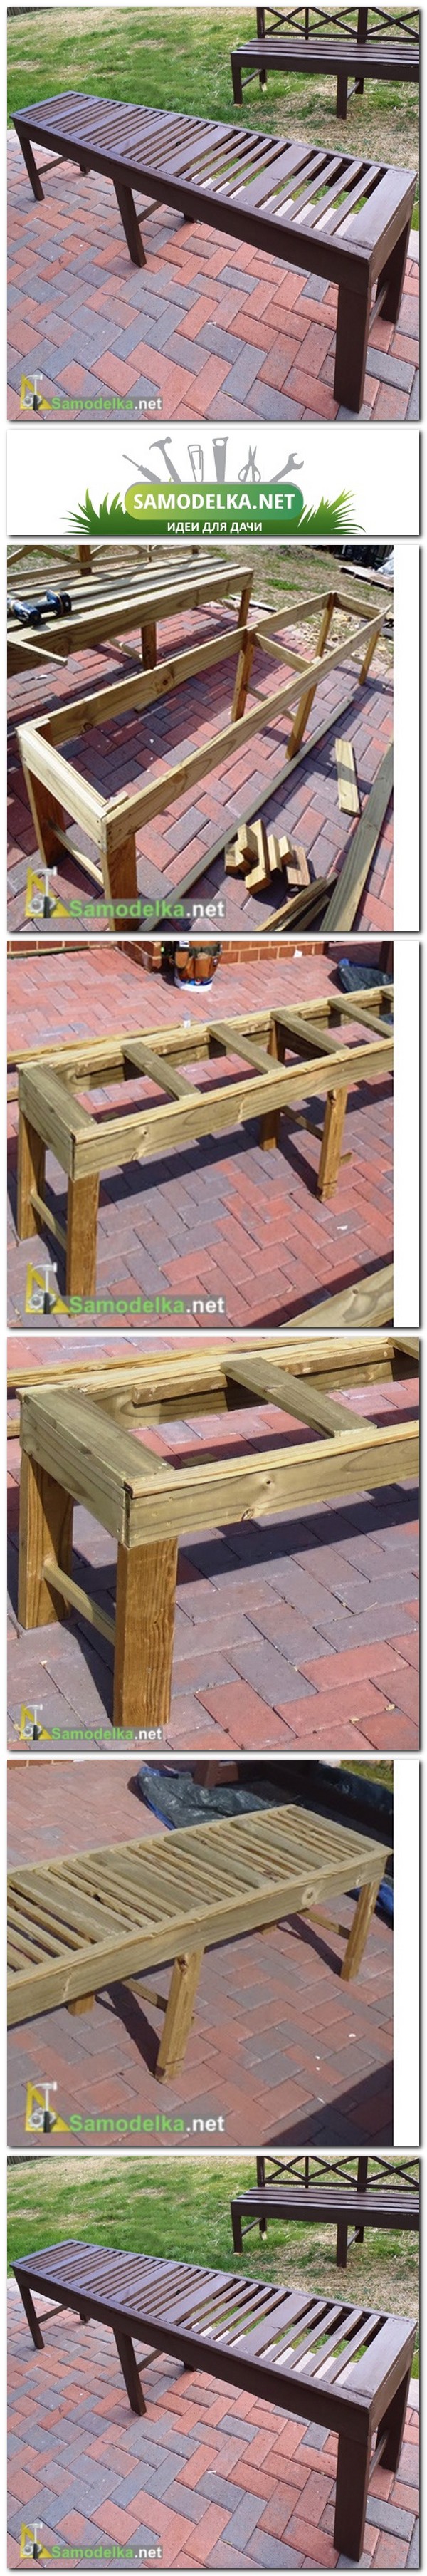 Как сделать вторую скамью к столу для сада покрытому плиткой